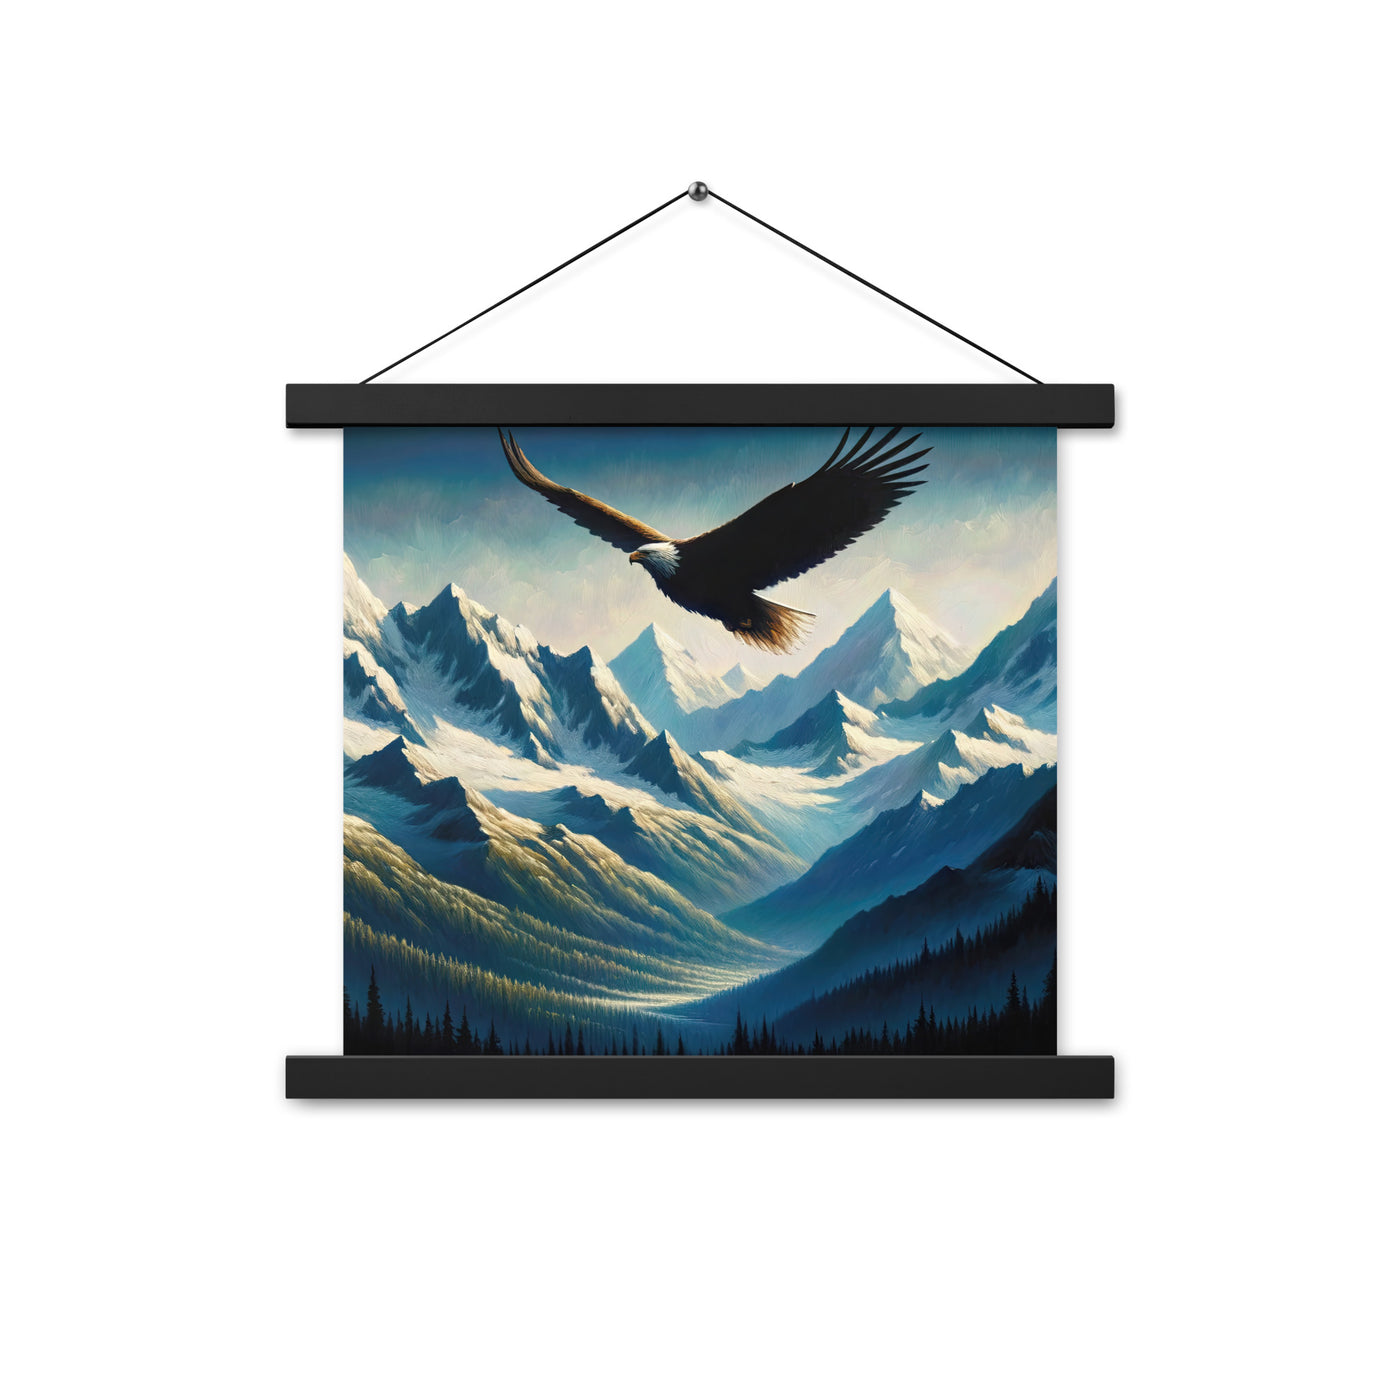 Ölgemälde eines Adlers vor schneebedeckten Bergsilhouetten - Premium Poster mit Aufhängung berge xxx yyy zzz 35.6 x 35.6 cm